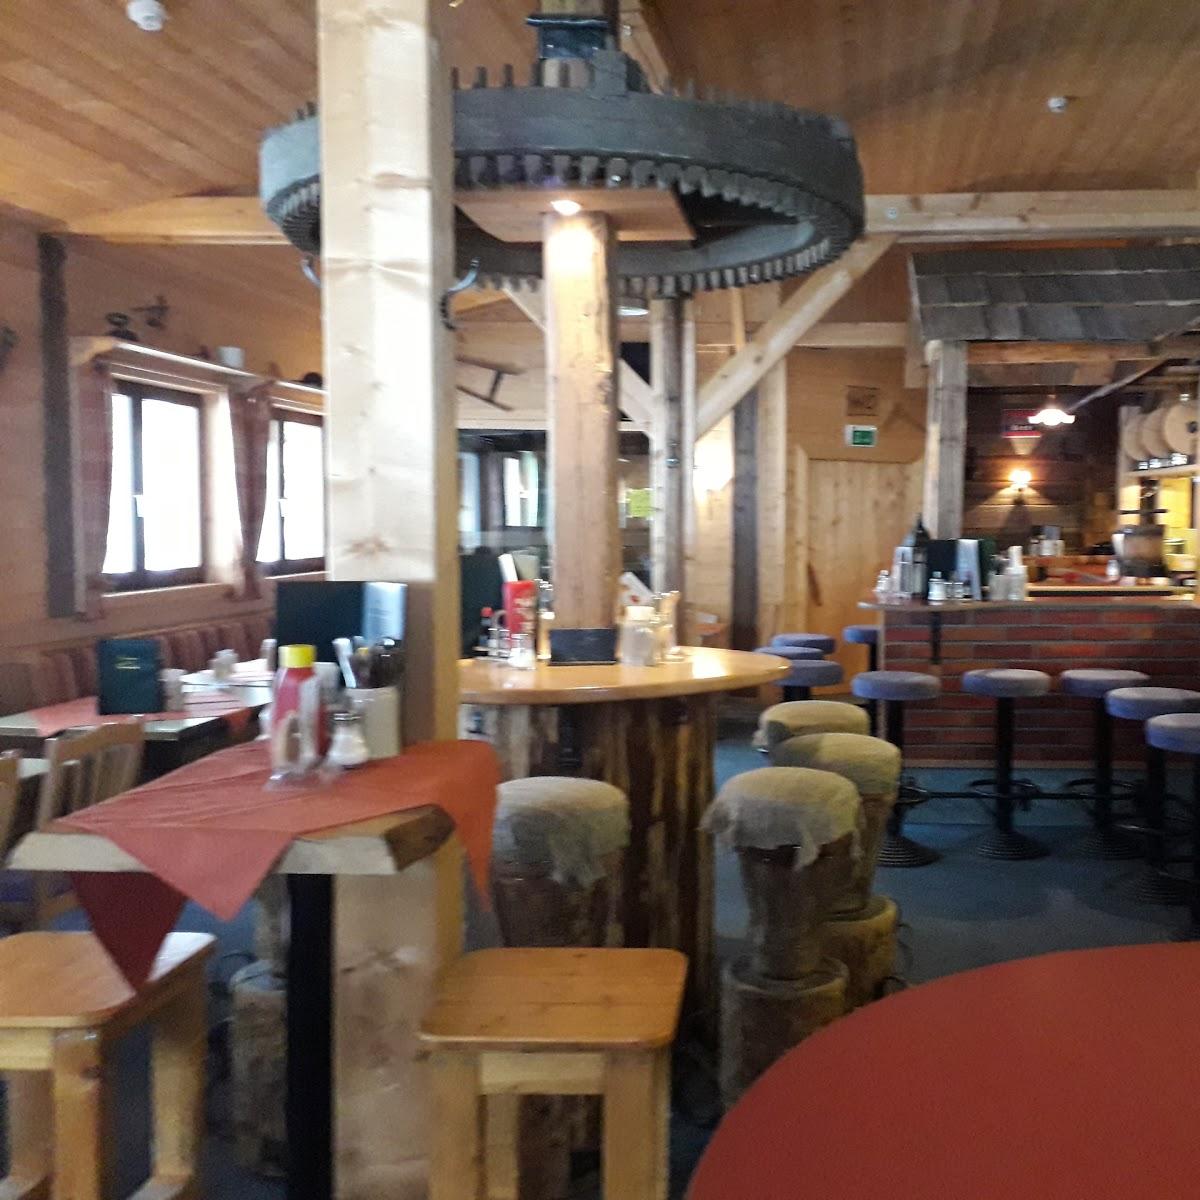 Restaurant "Fuchswaldhütte" in Lackenhof